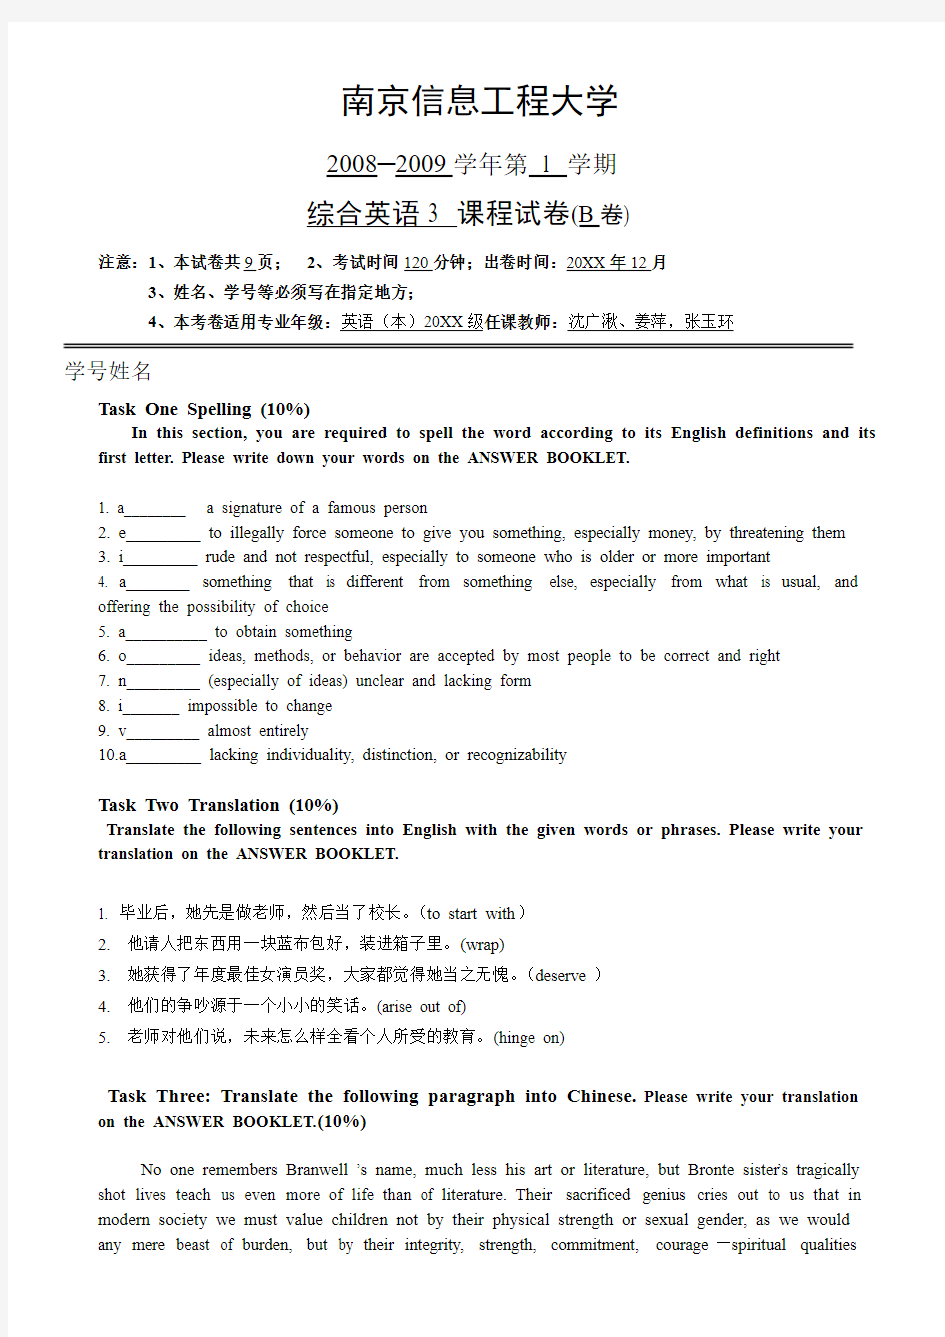 南京信息工程大学语言文化学院英语系试卷B综合英语3课程试卷( B卷)参考答案及评分标准